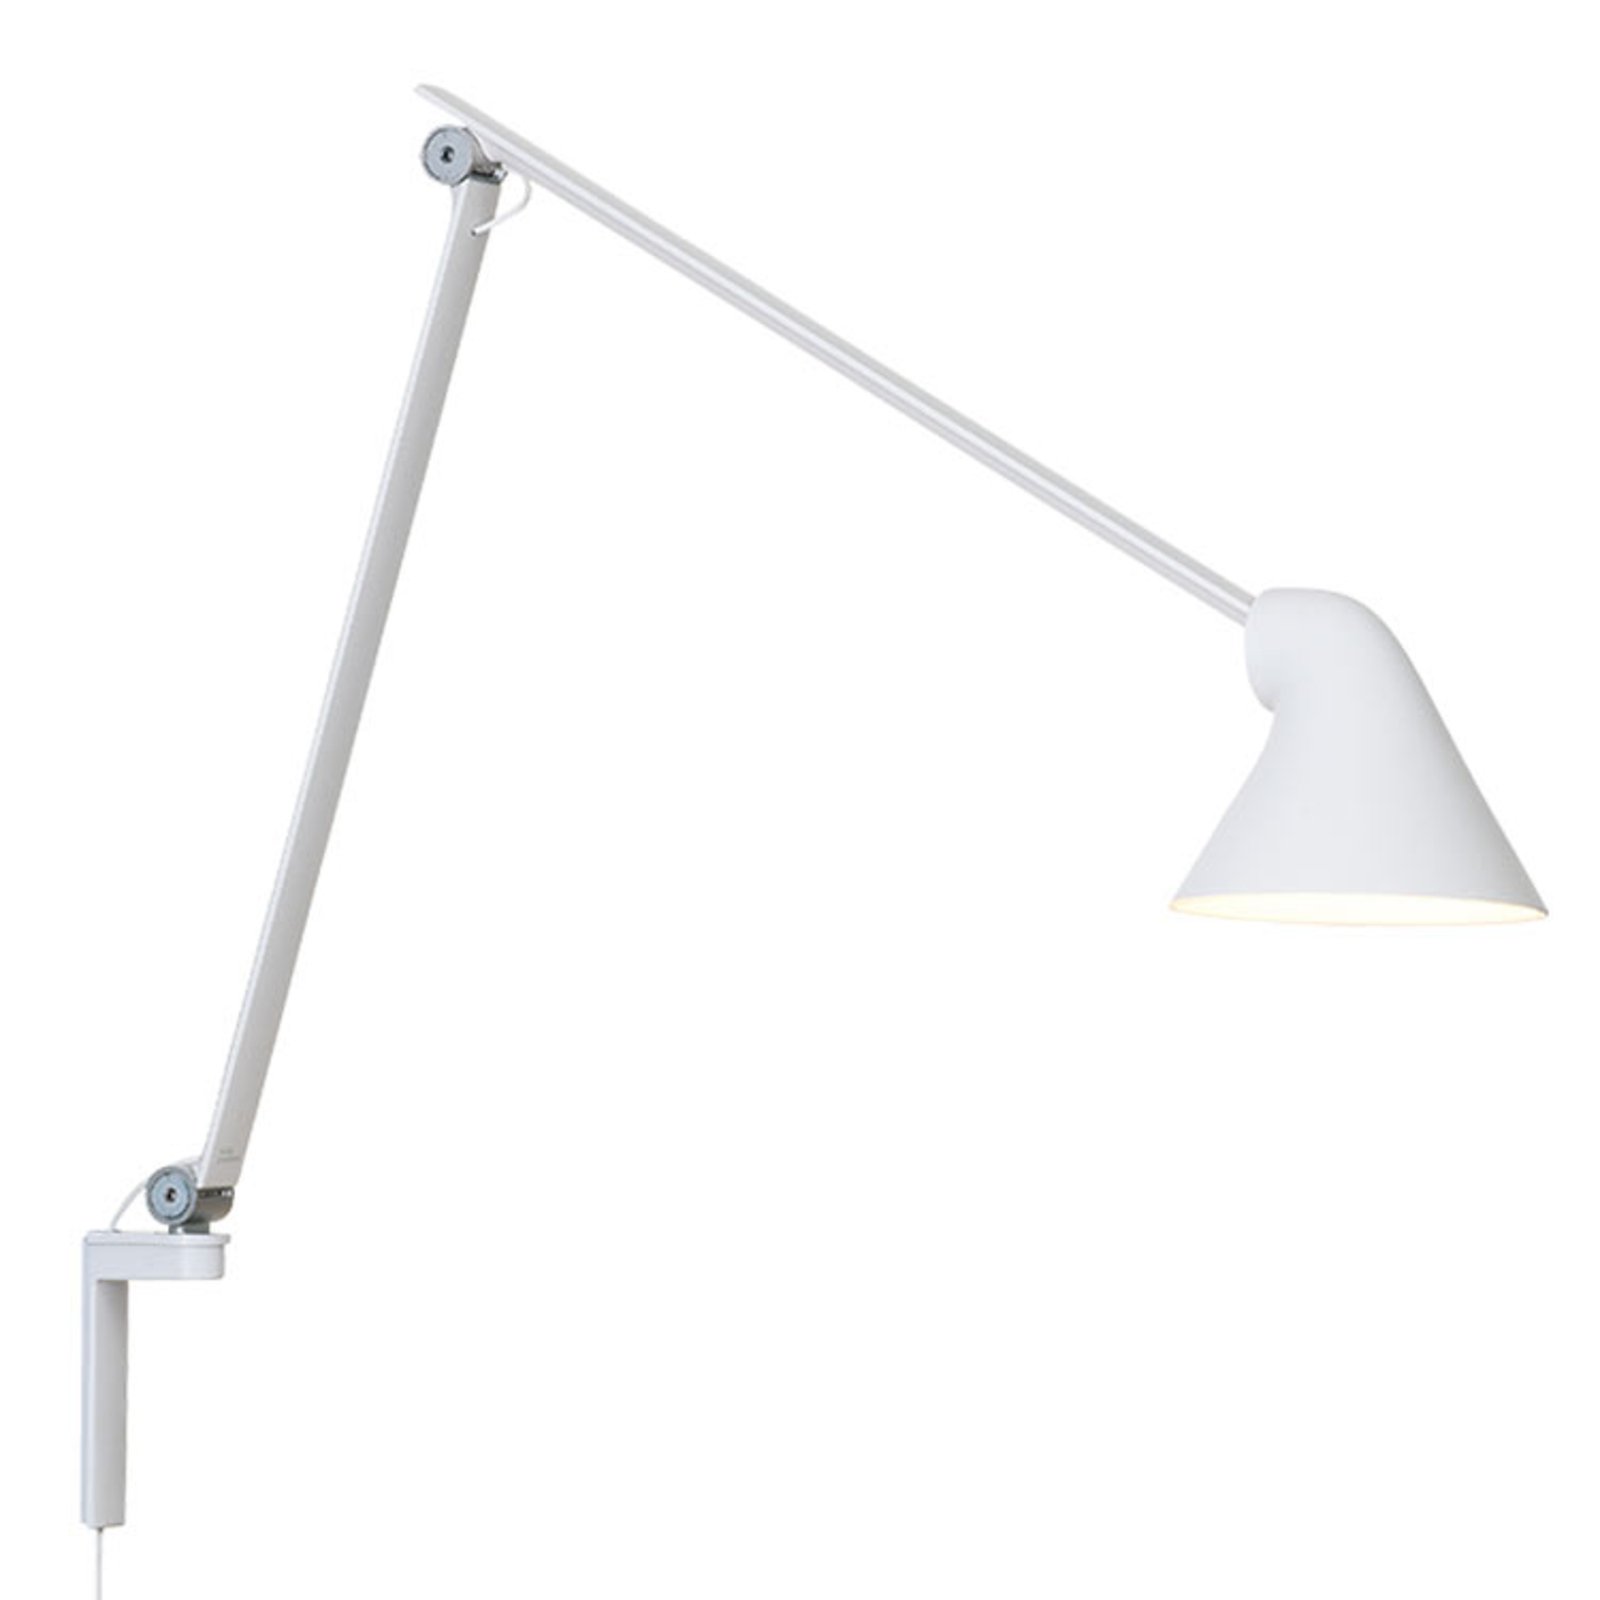 Louis Poulsen NJP LED wall lamp, long arm, white